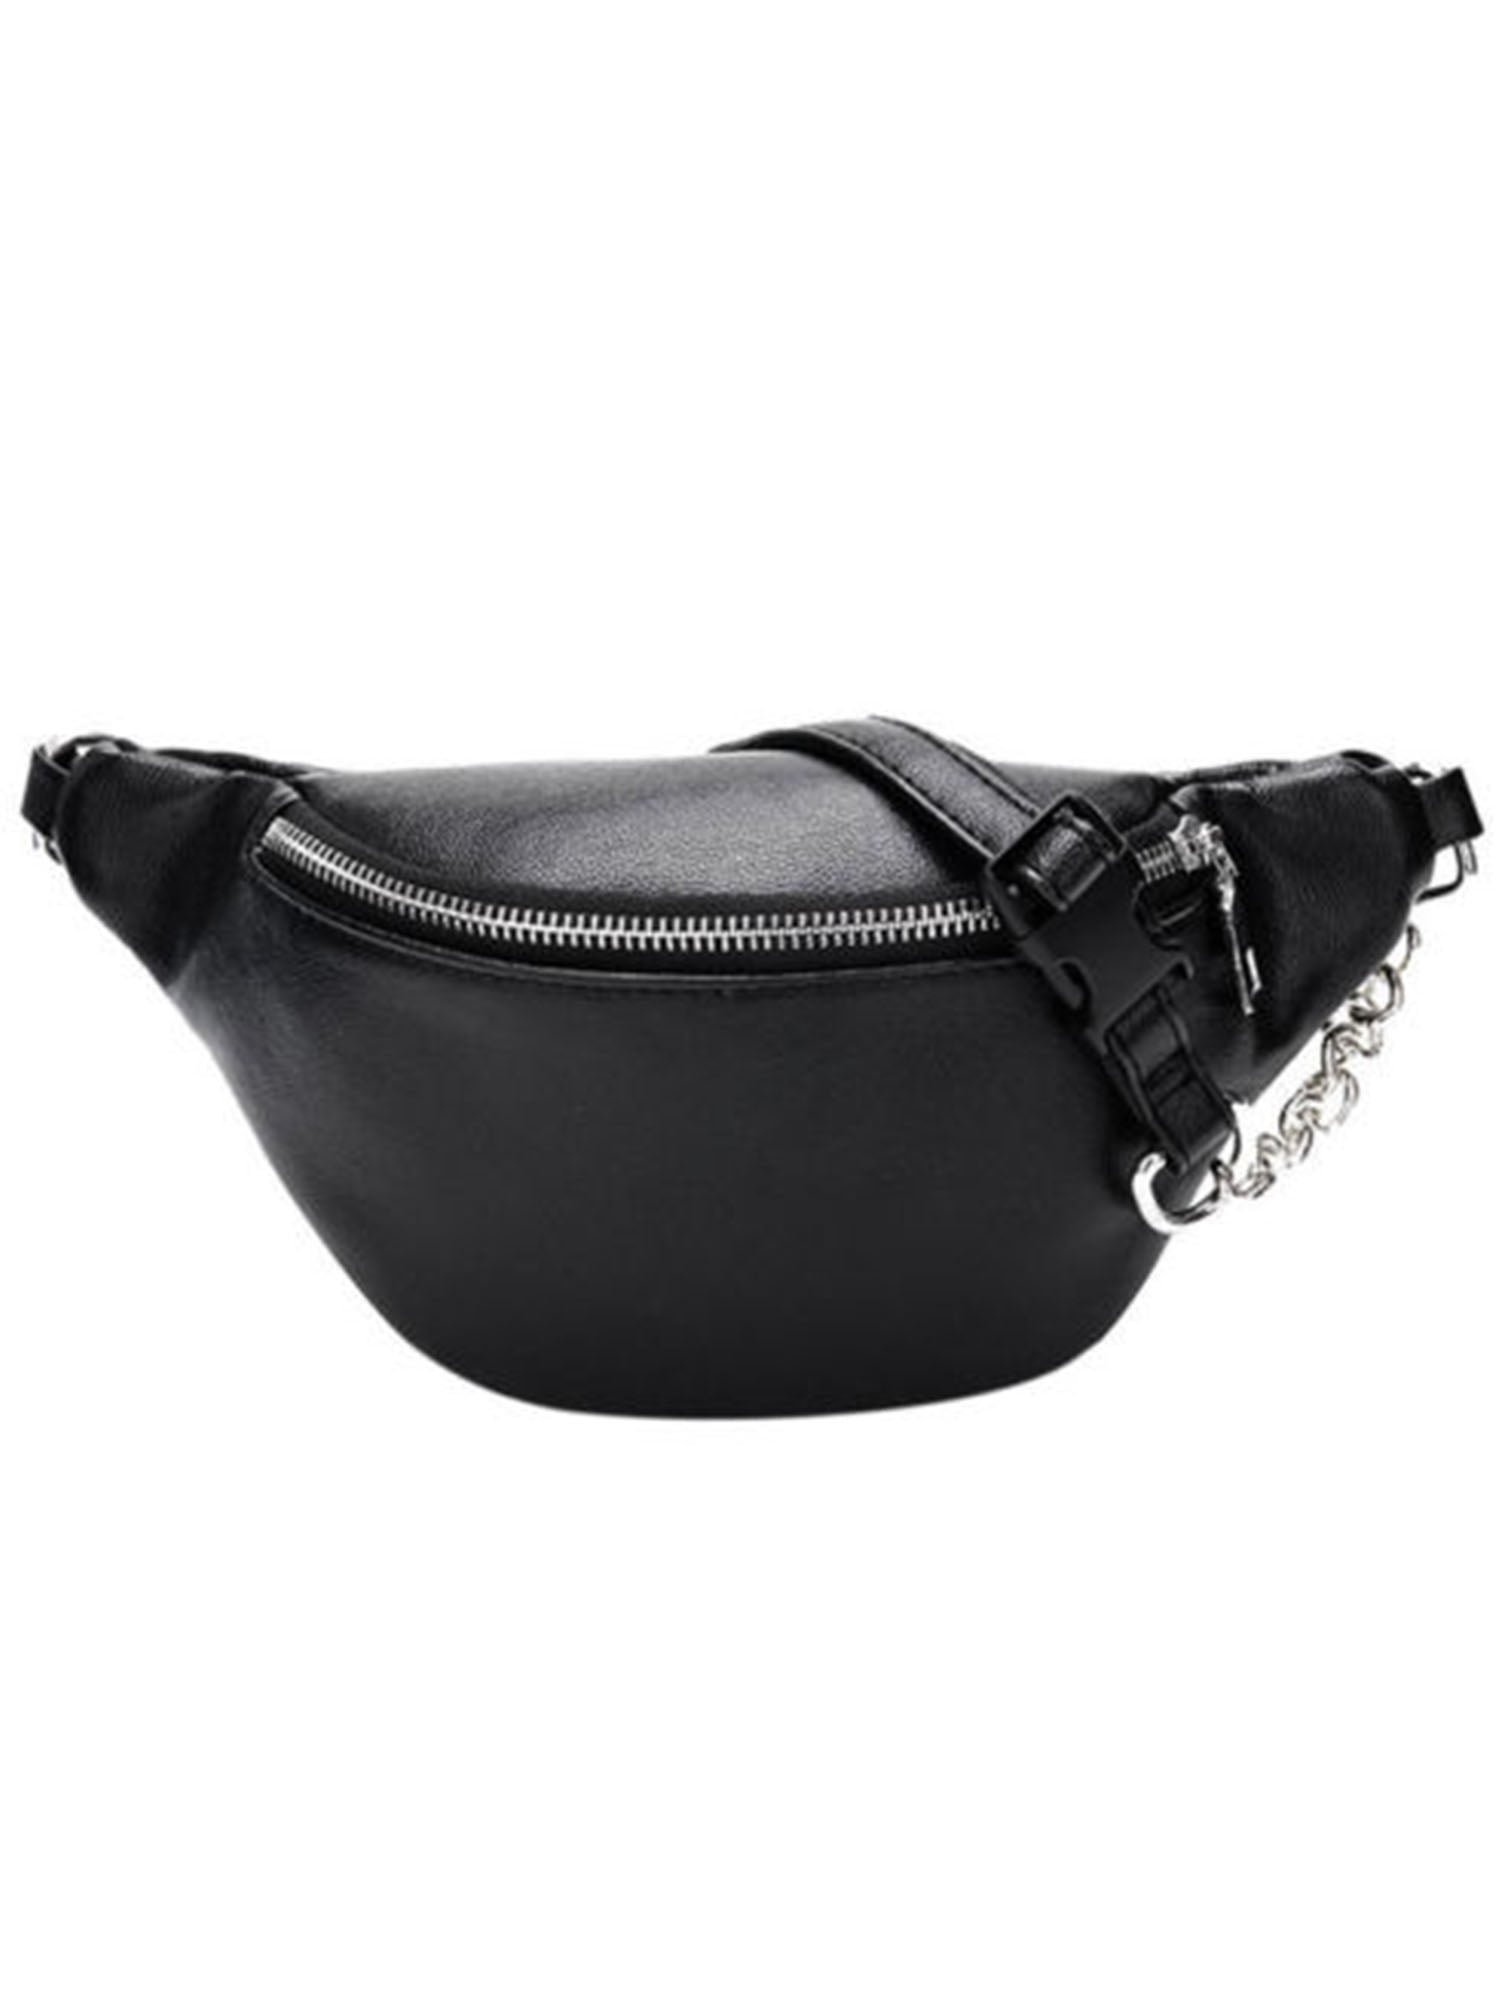 Women Waist Fanny Pack Belt Bag Pouch Travel Hip Bum Bag Chain Waist Small Purse 